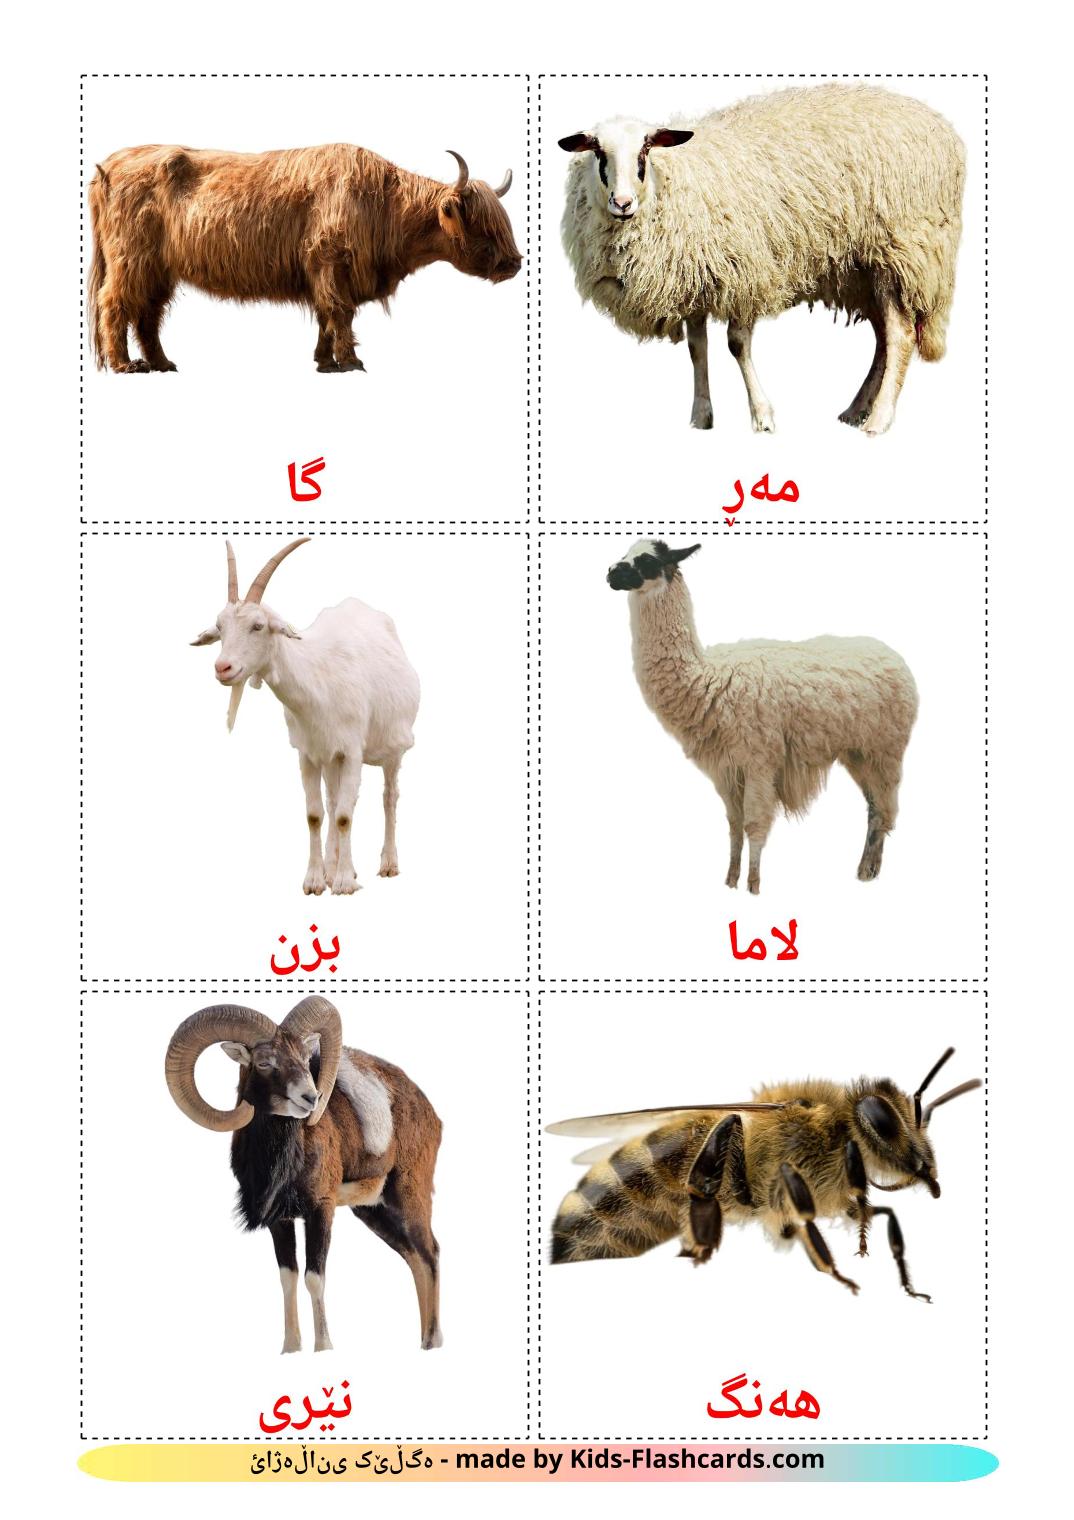 Farm animals - 15 Free Printable kurdish(sorani) Flashcards 